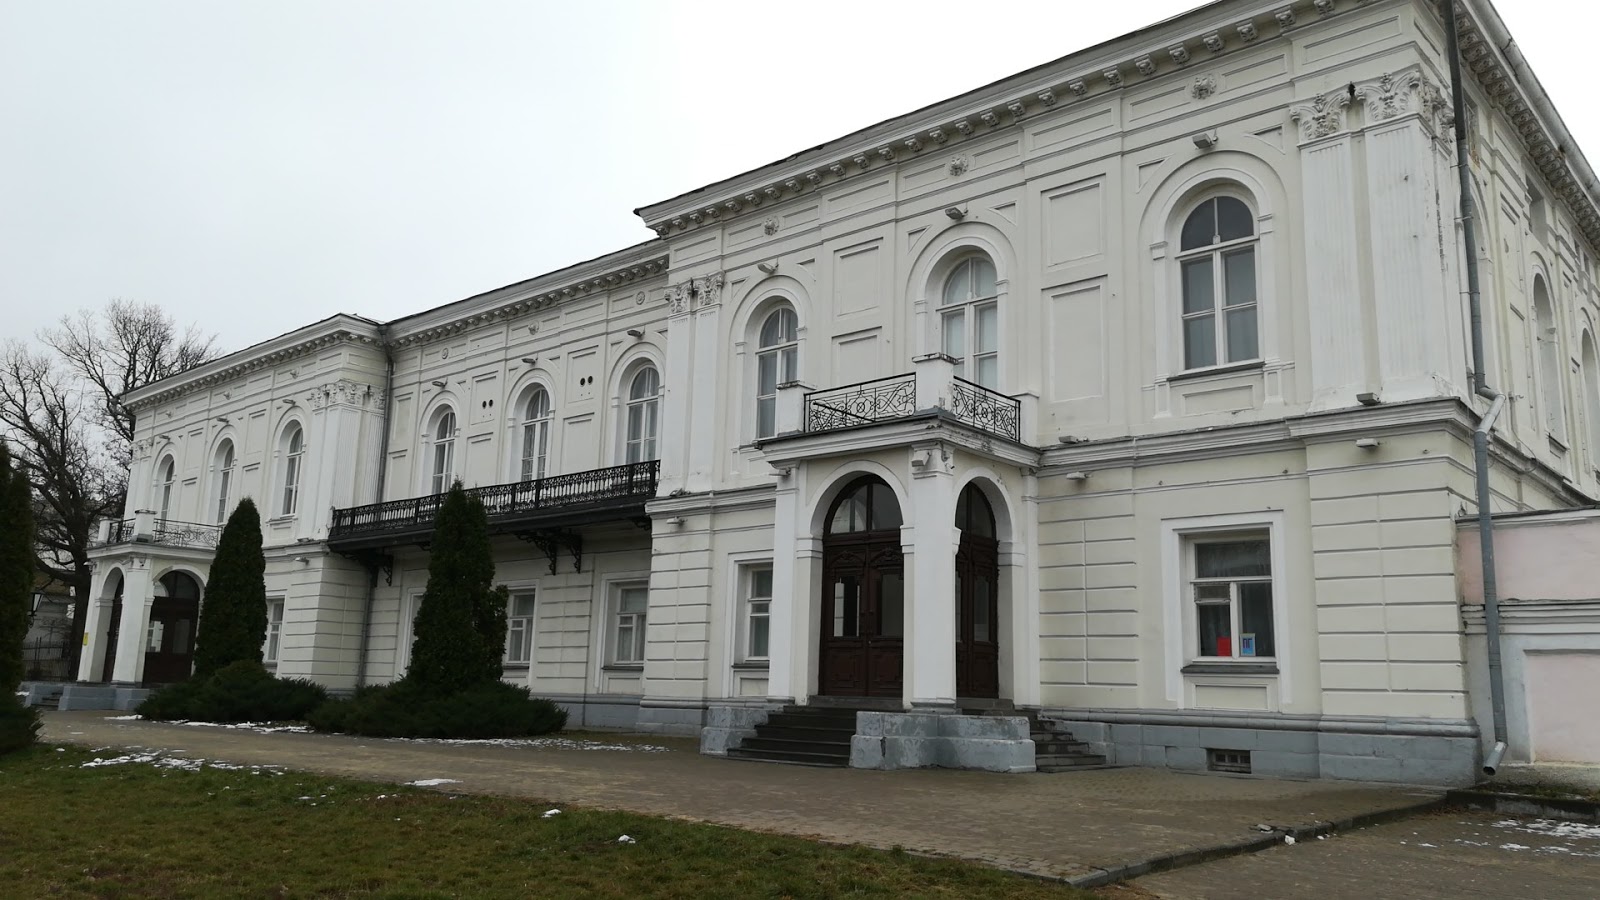 Atamanskiy Dvorets